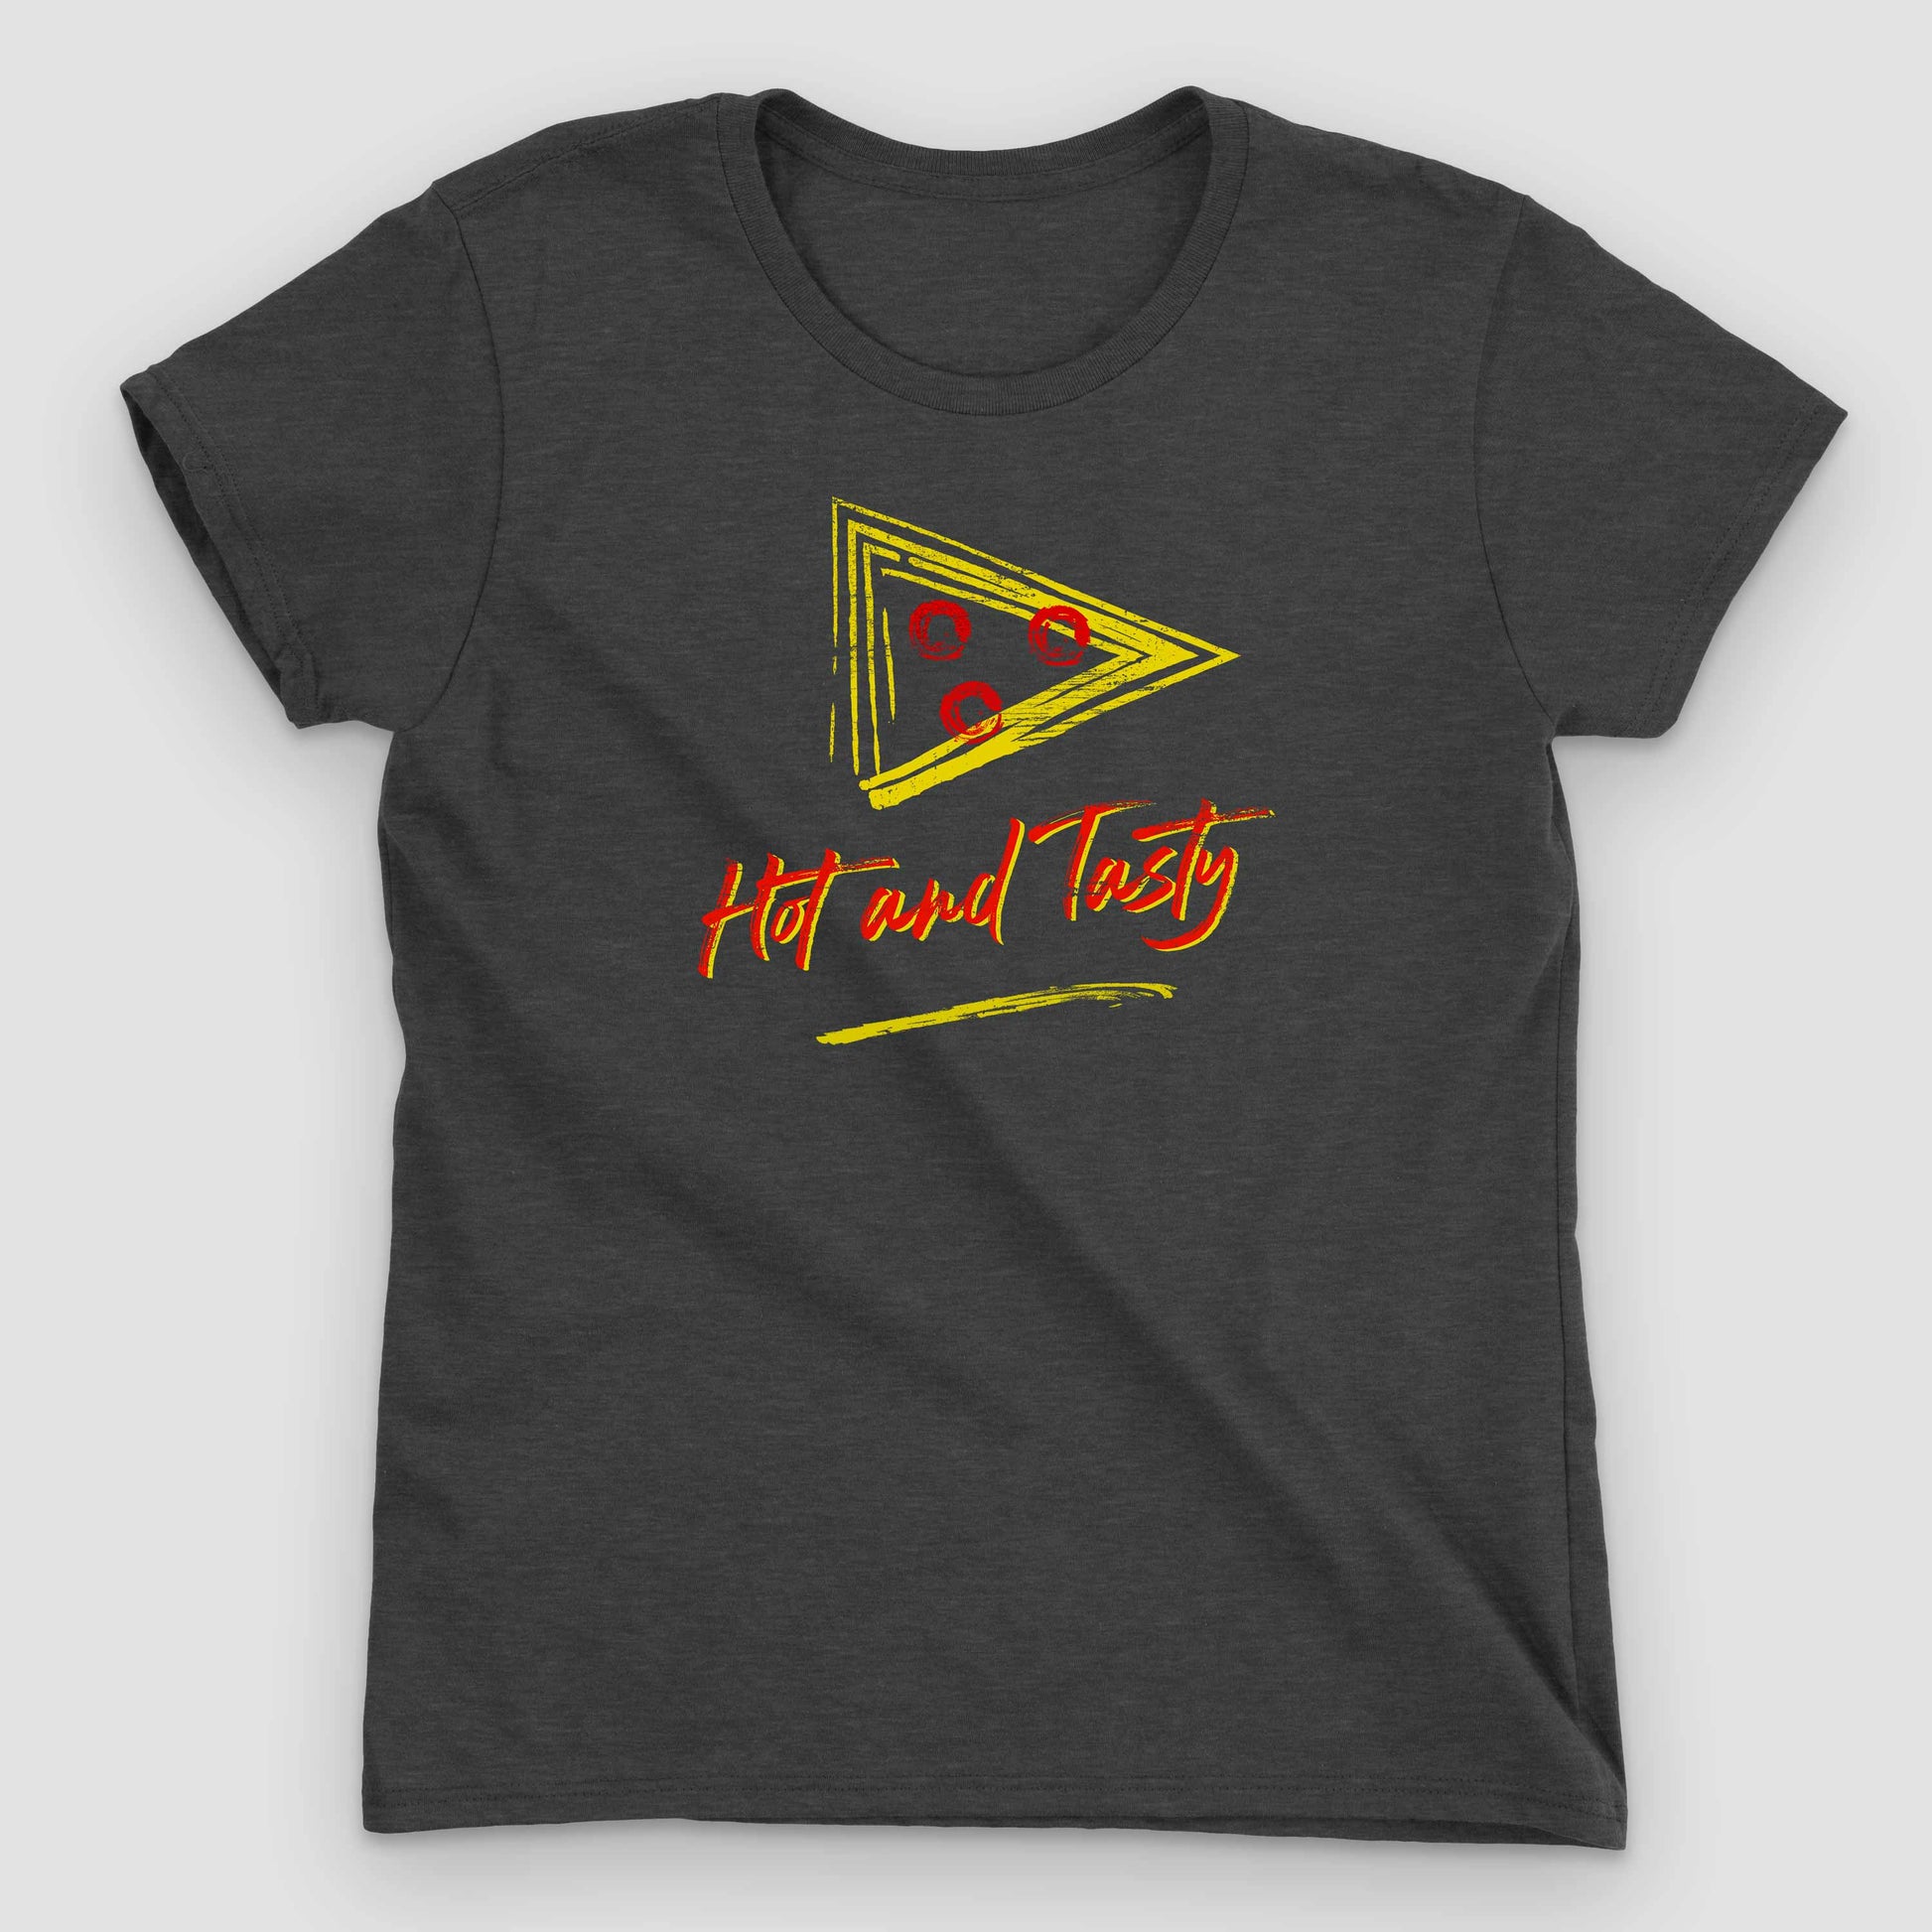 Heather Dark Grey Retro Hot & Tasty Pizza Women's Graphic T-Shirt by Snaxtime